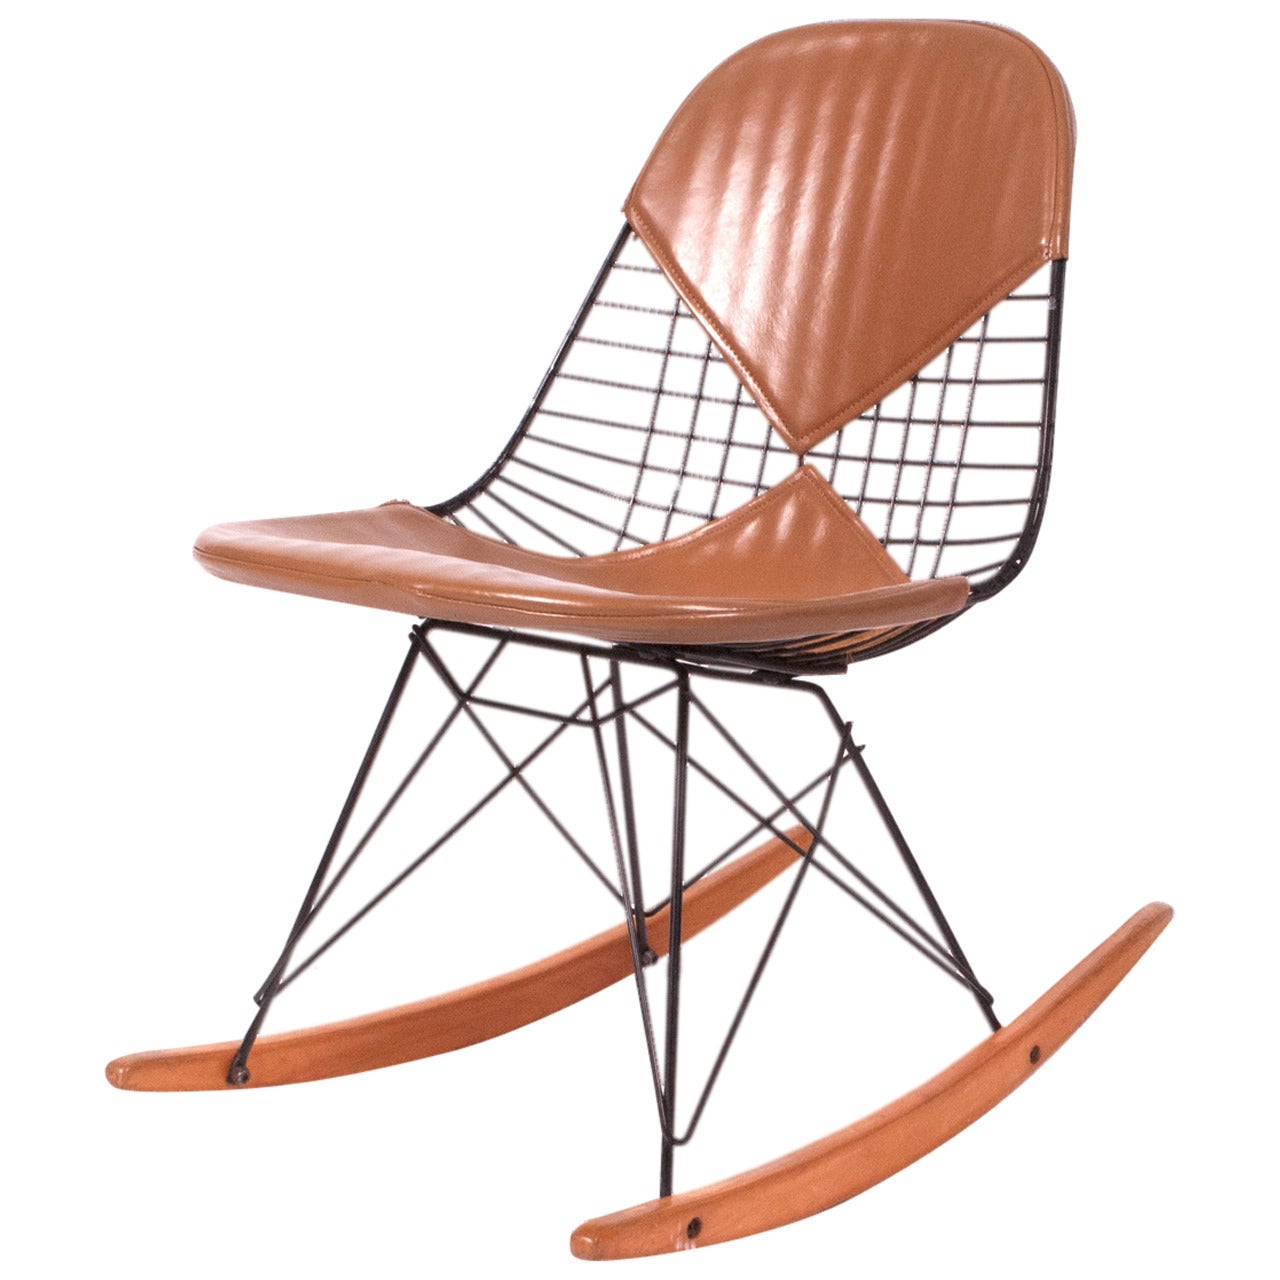 RKR Charles Eames Rocker Chair Original